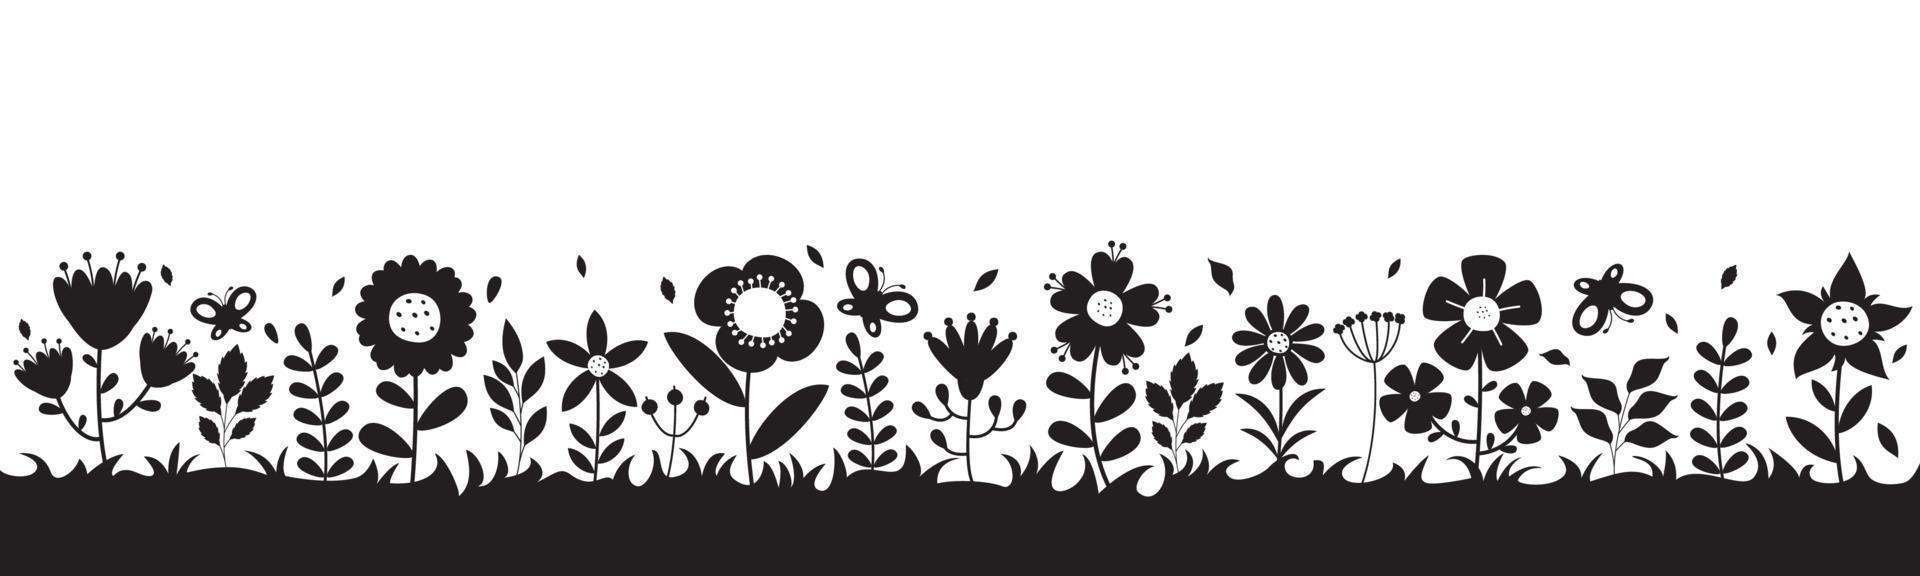 silhouet tekening van bloemen en planten vector